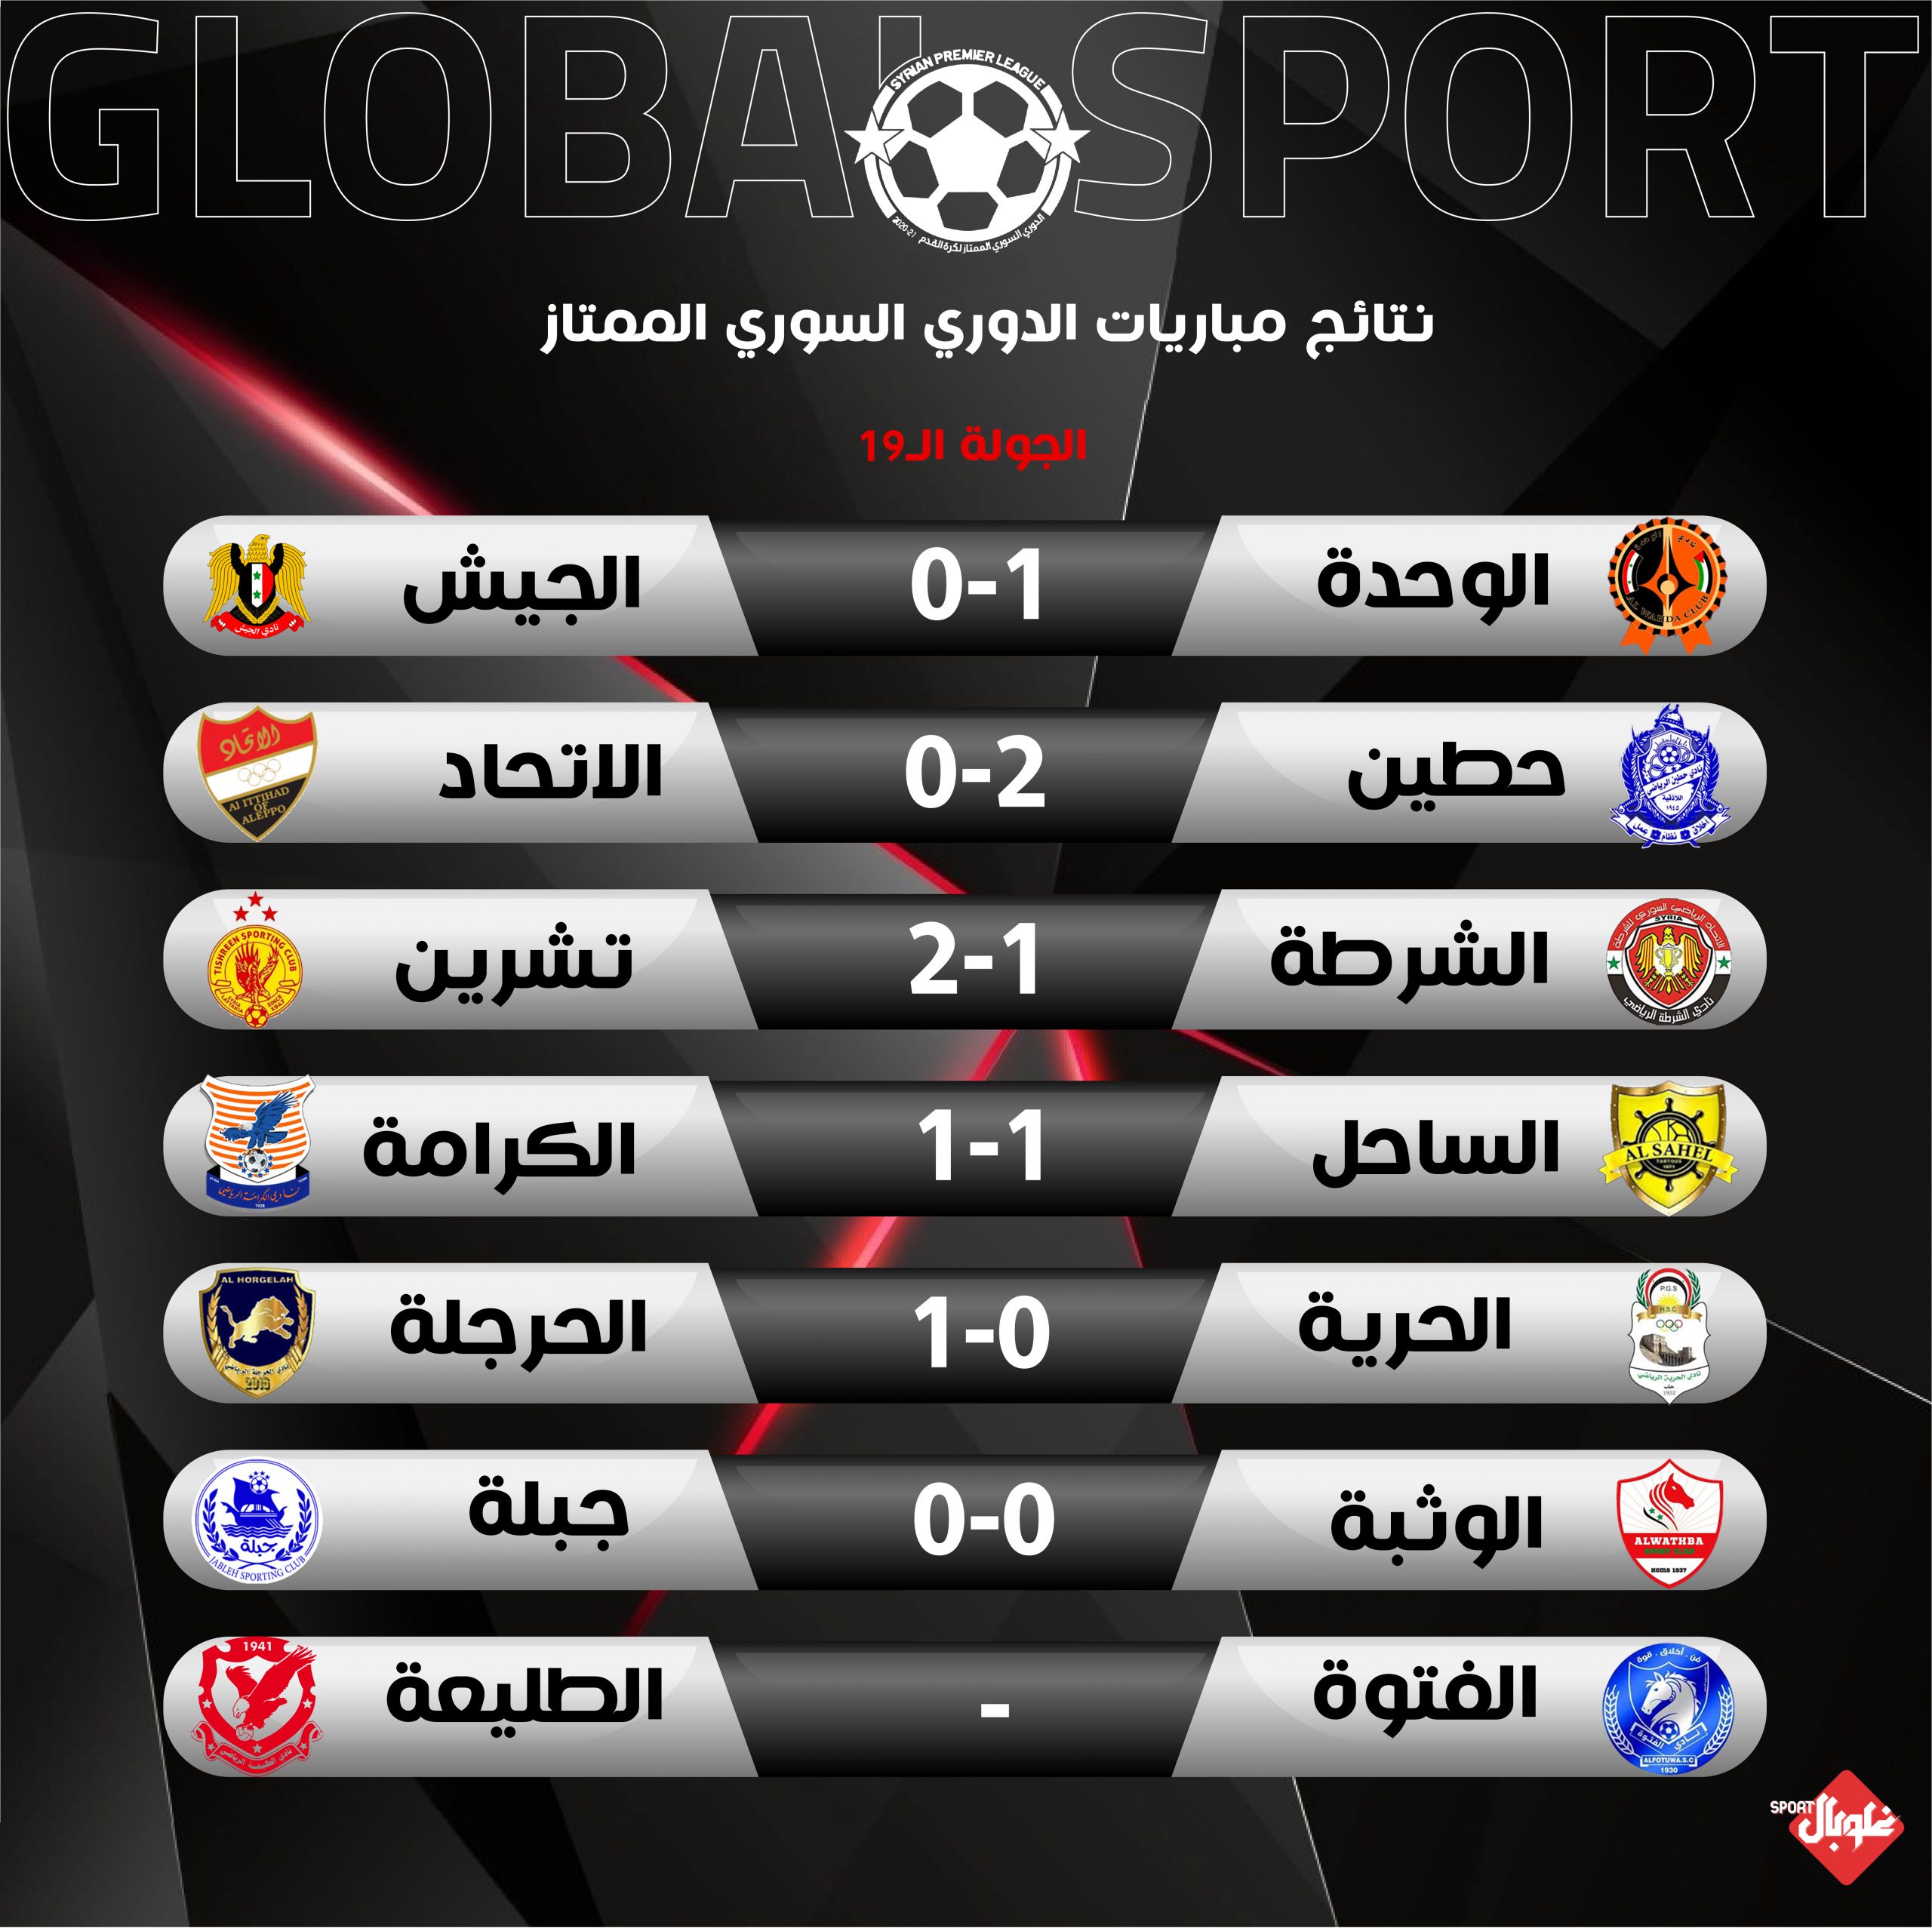 نتائج وتحليل مباريات المرحلة 19 من الدوري السوري